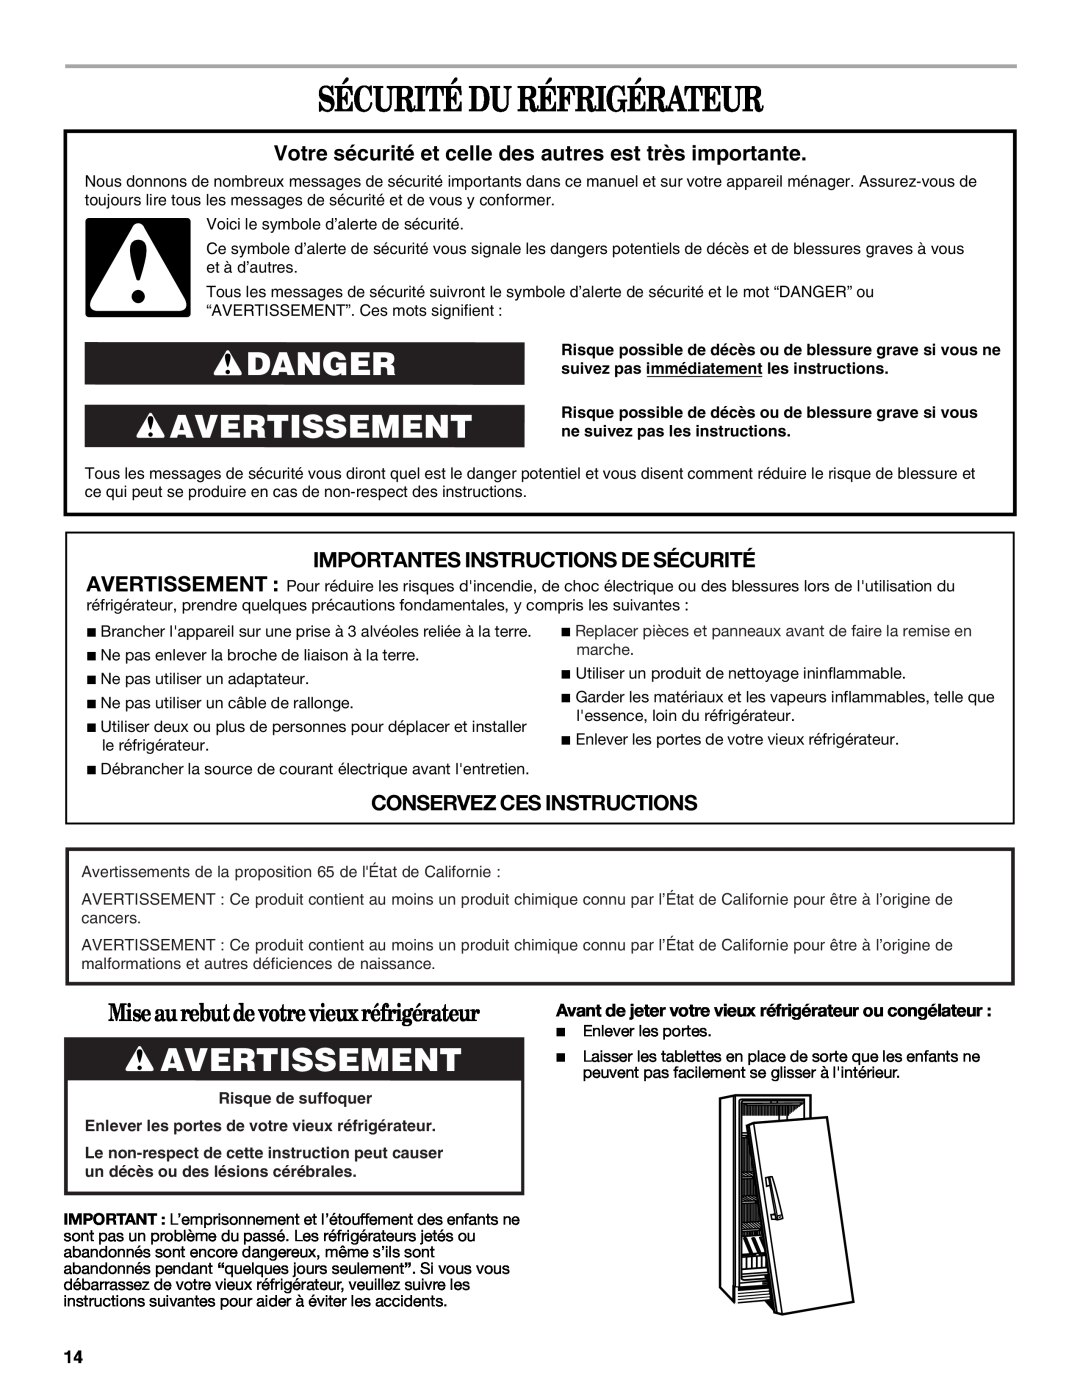 Whirlpool W10326802B manual Sécurité Du Réfrigérateur, Danger Avertissement, Importantes Instructions De Sécurité 